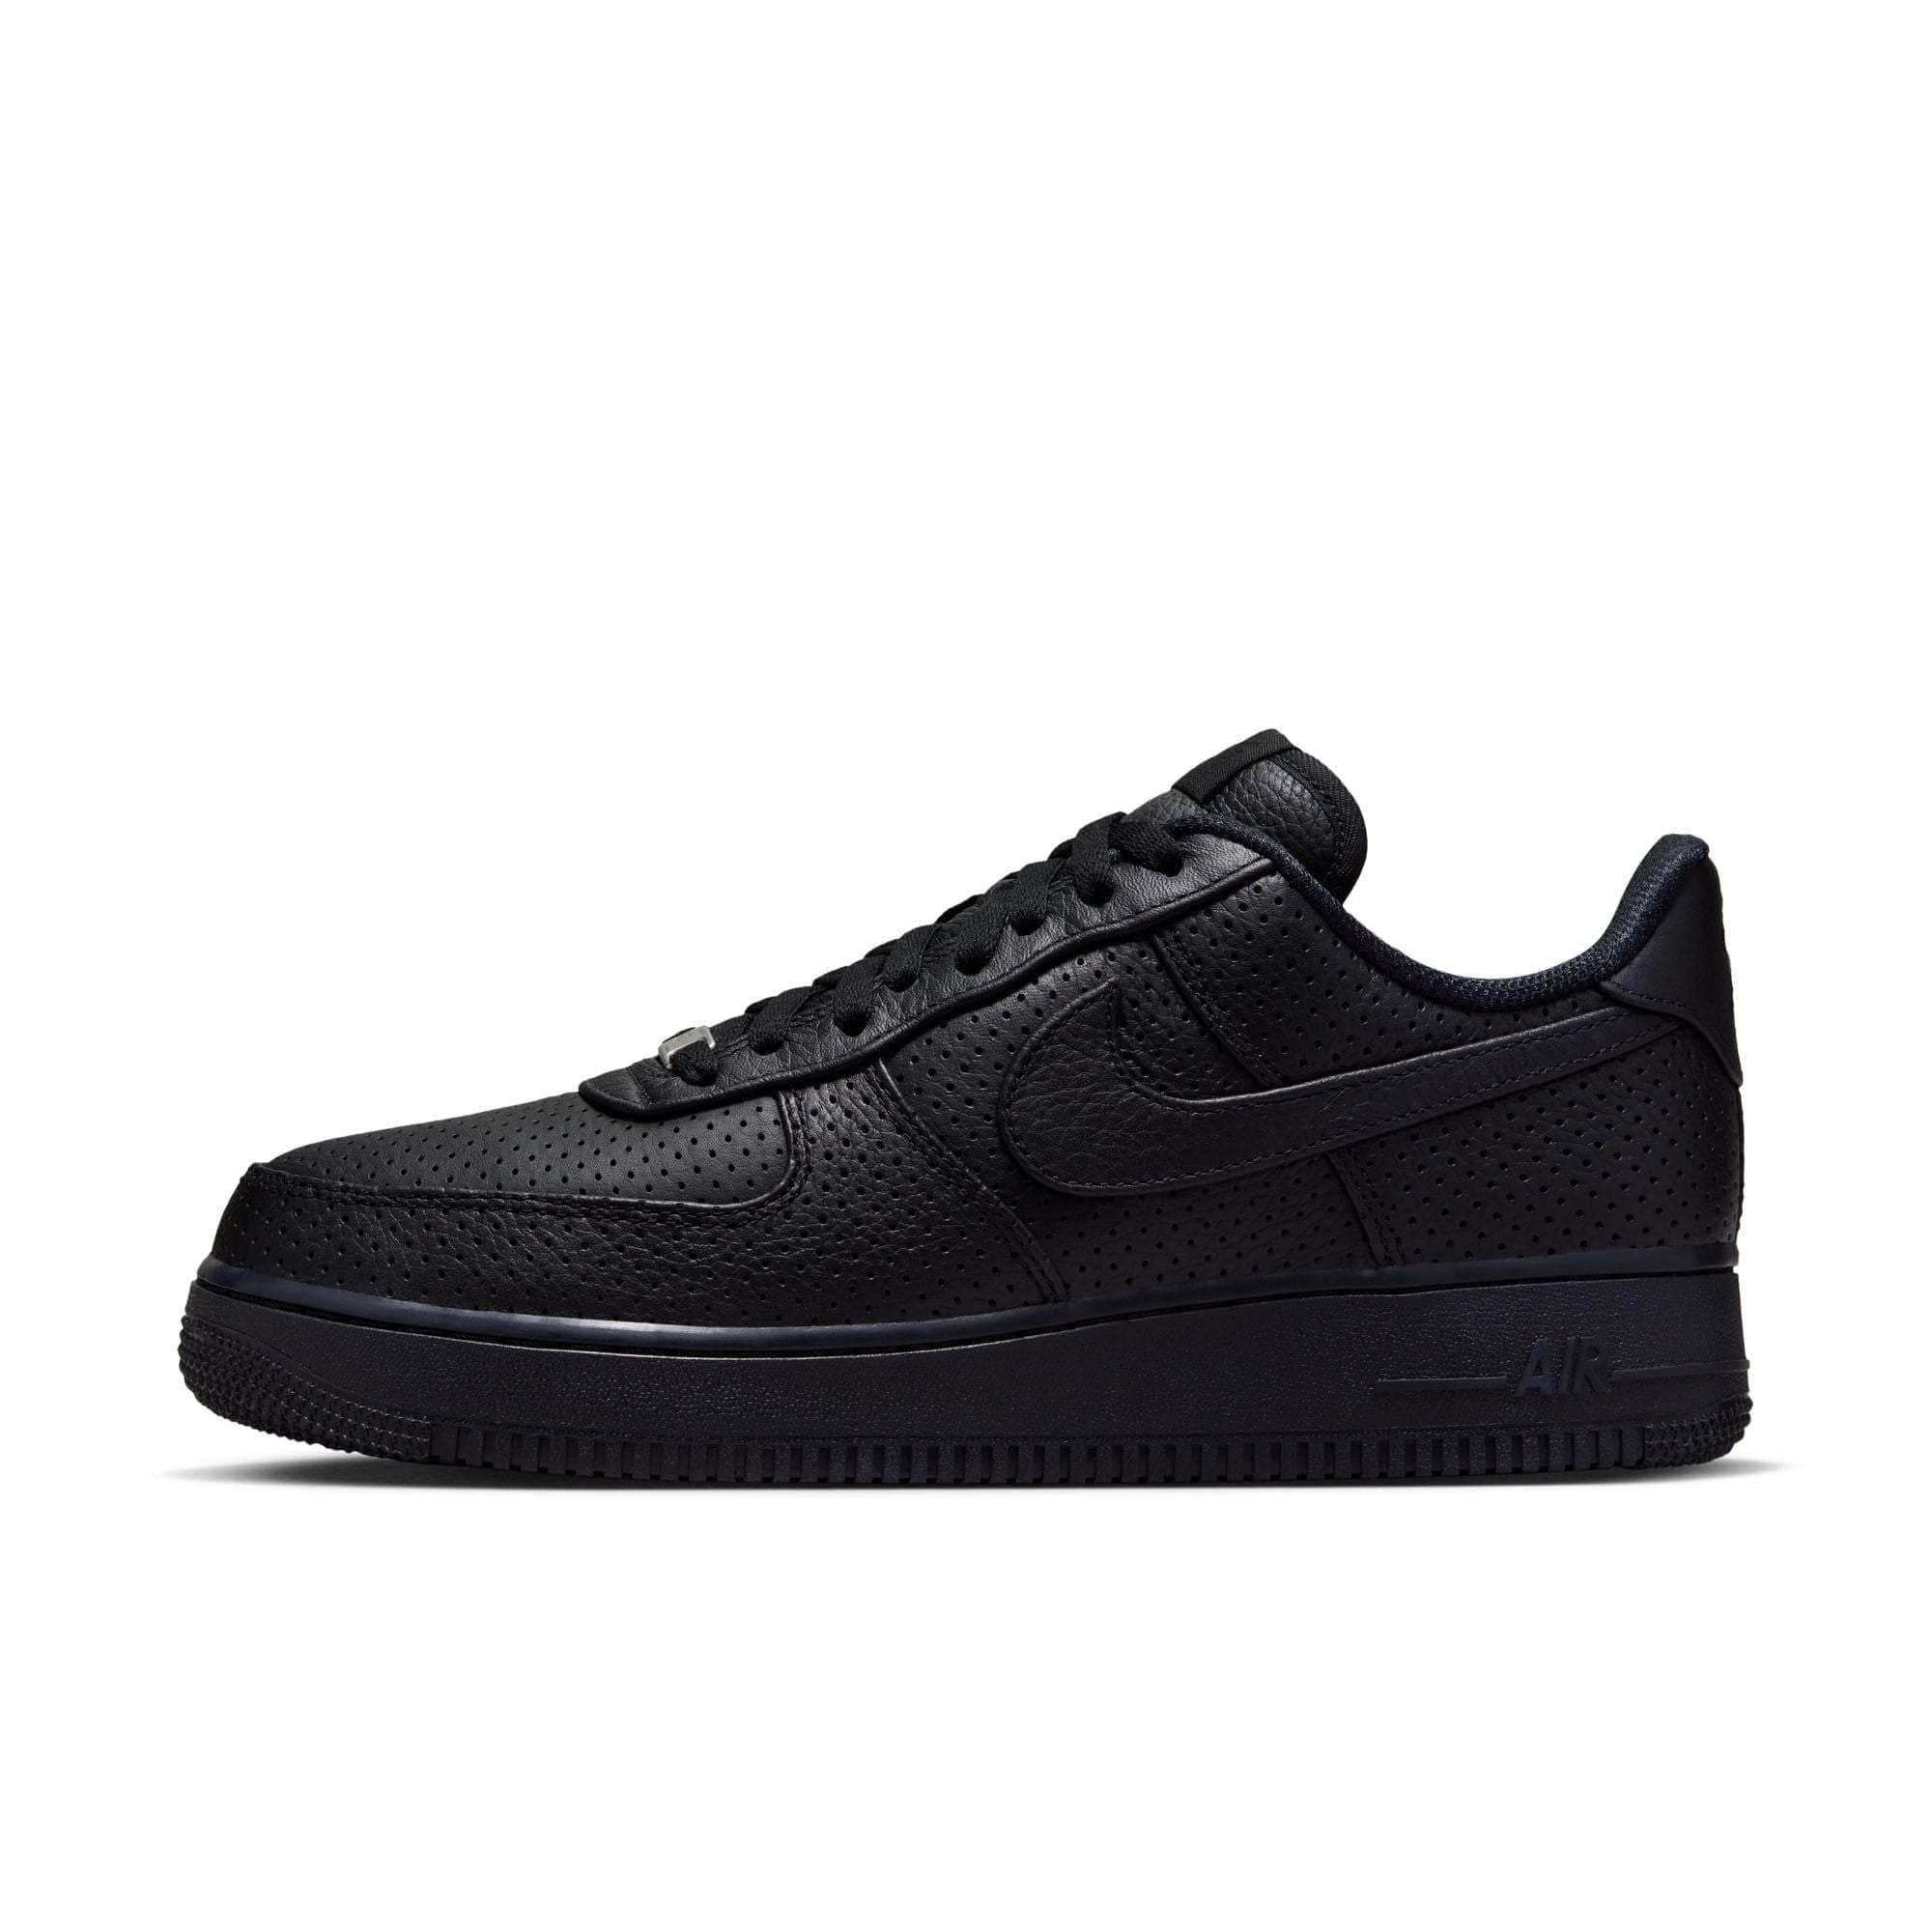 Nike Footwear Nike Air Force 1 Low SP "Triple Black Perforated" - Men's